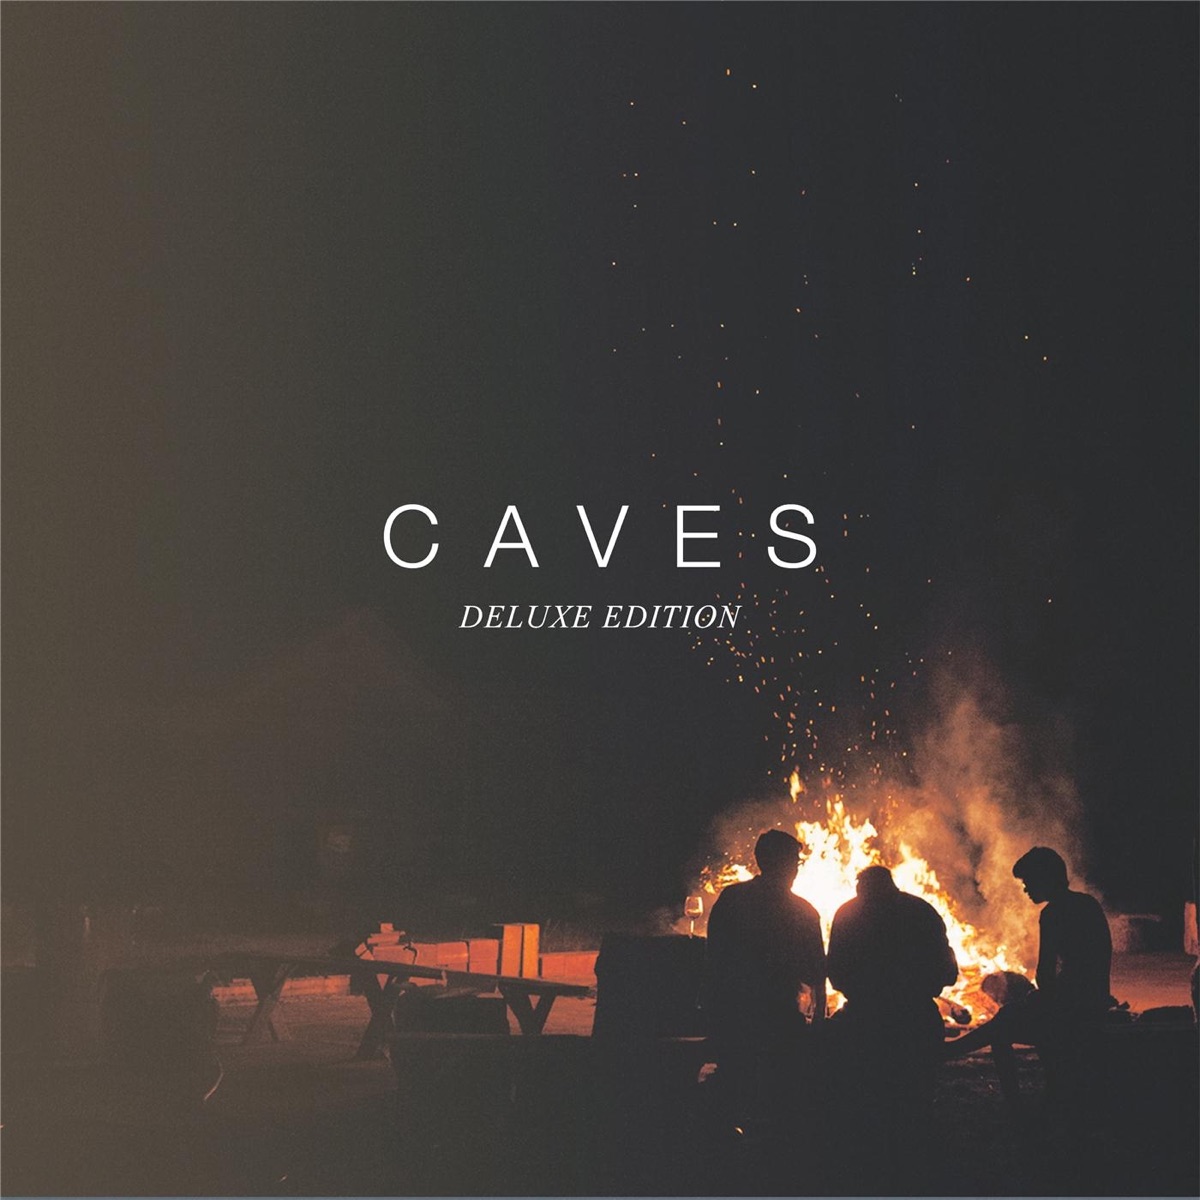 Cave Runner - EP - Album by Ninety - Apple Music